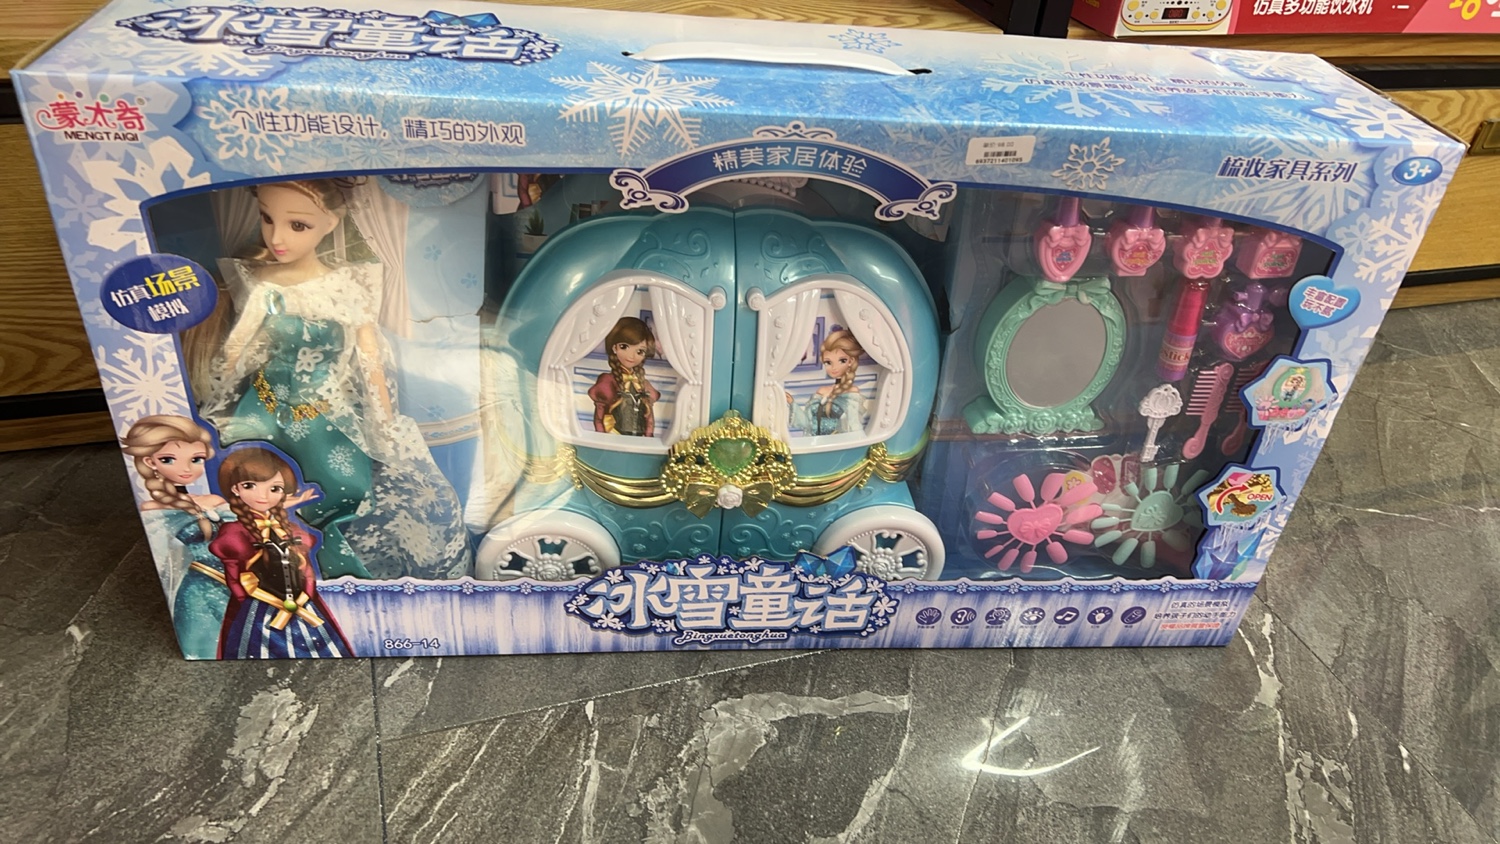 蒙太奇冰雪童话仿真别墅厨房套装儿童过家家玩具艾莎公主女孩场景